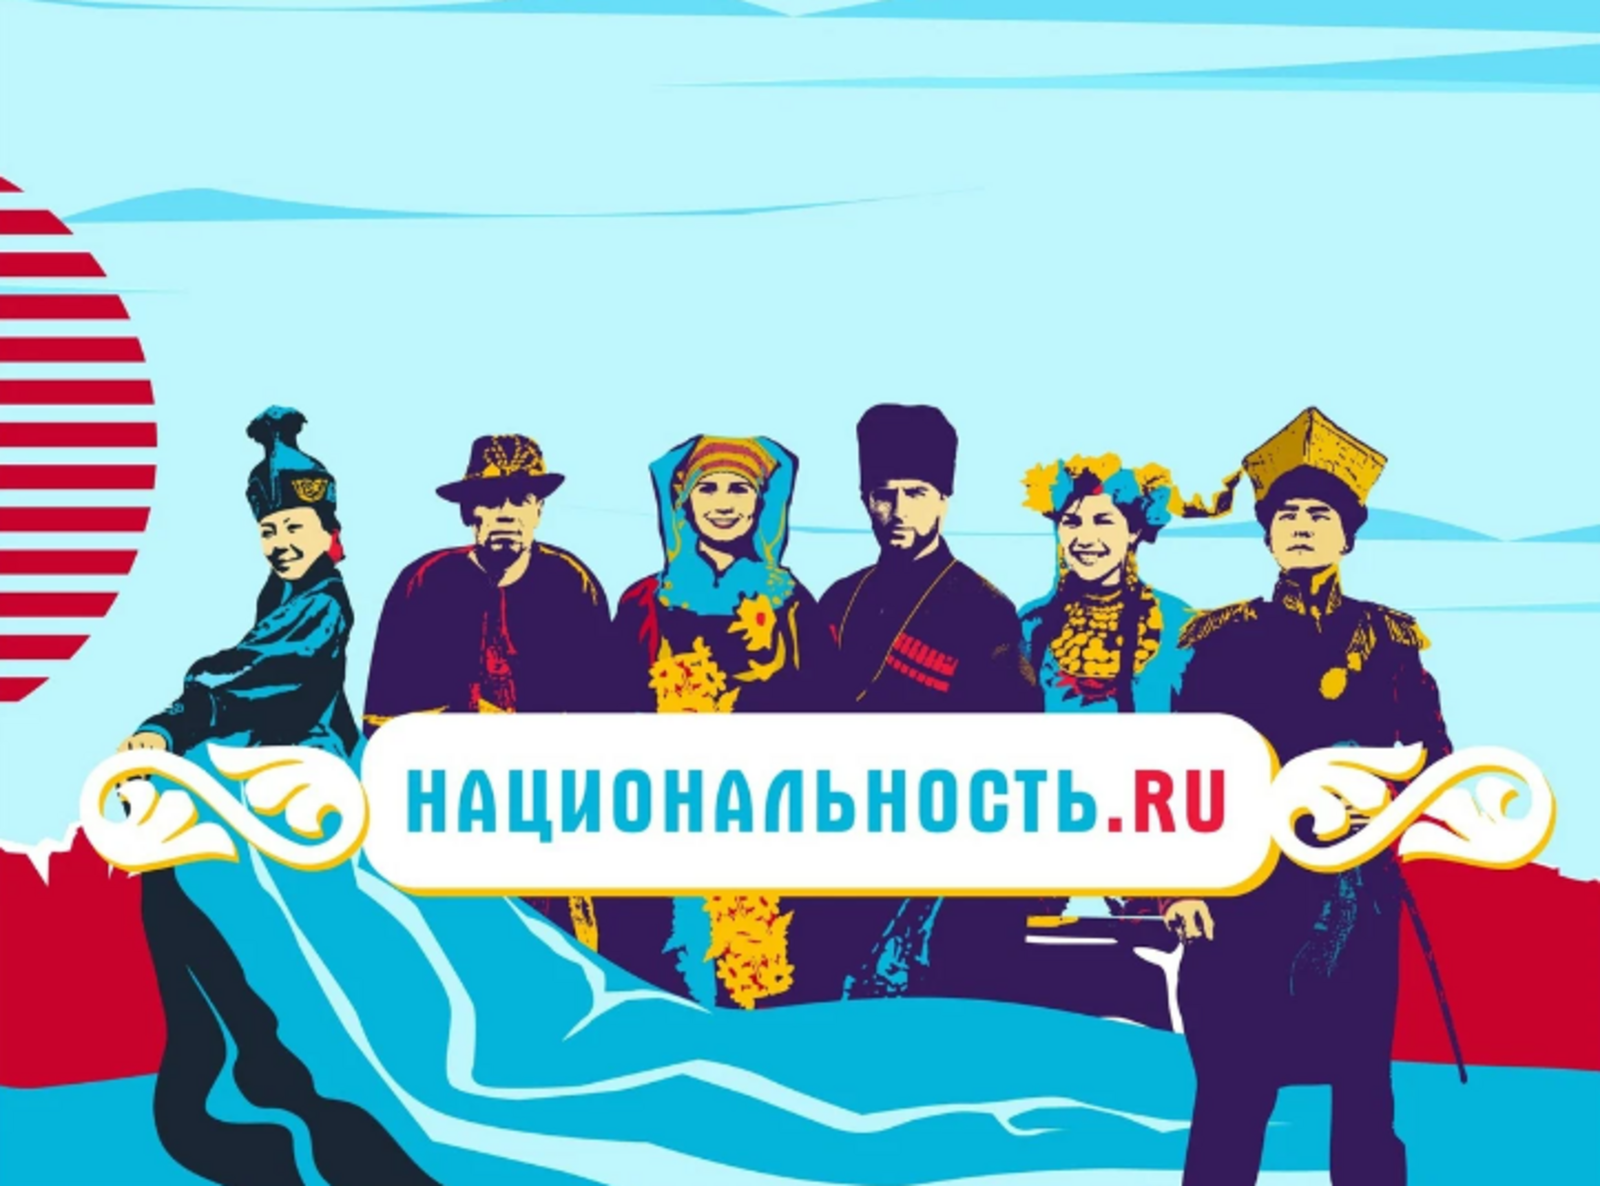 Съемочная группа тревел-проекта «Национальность.ru» - в Башкортостане